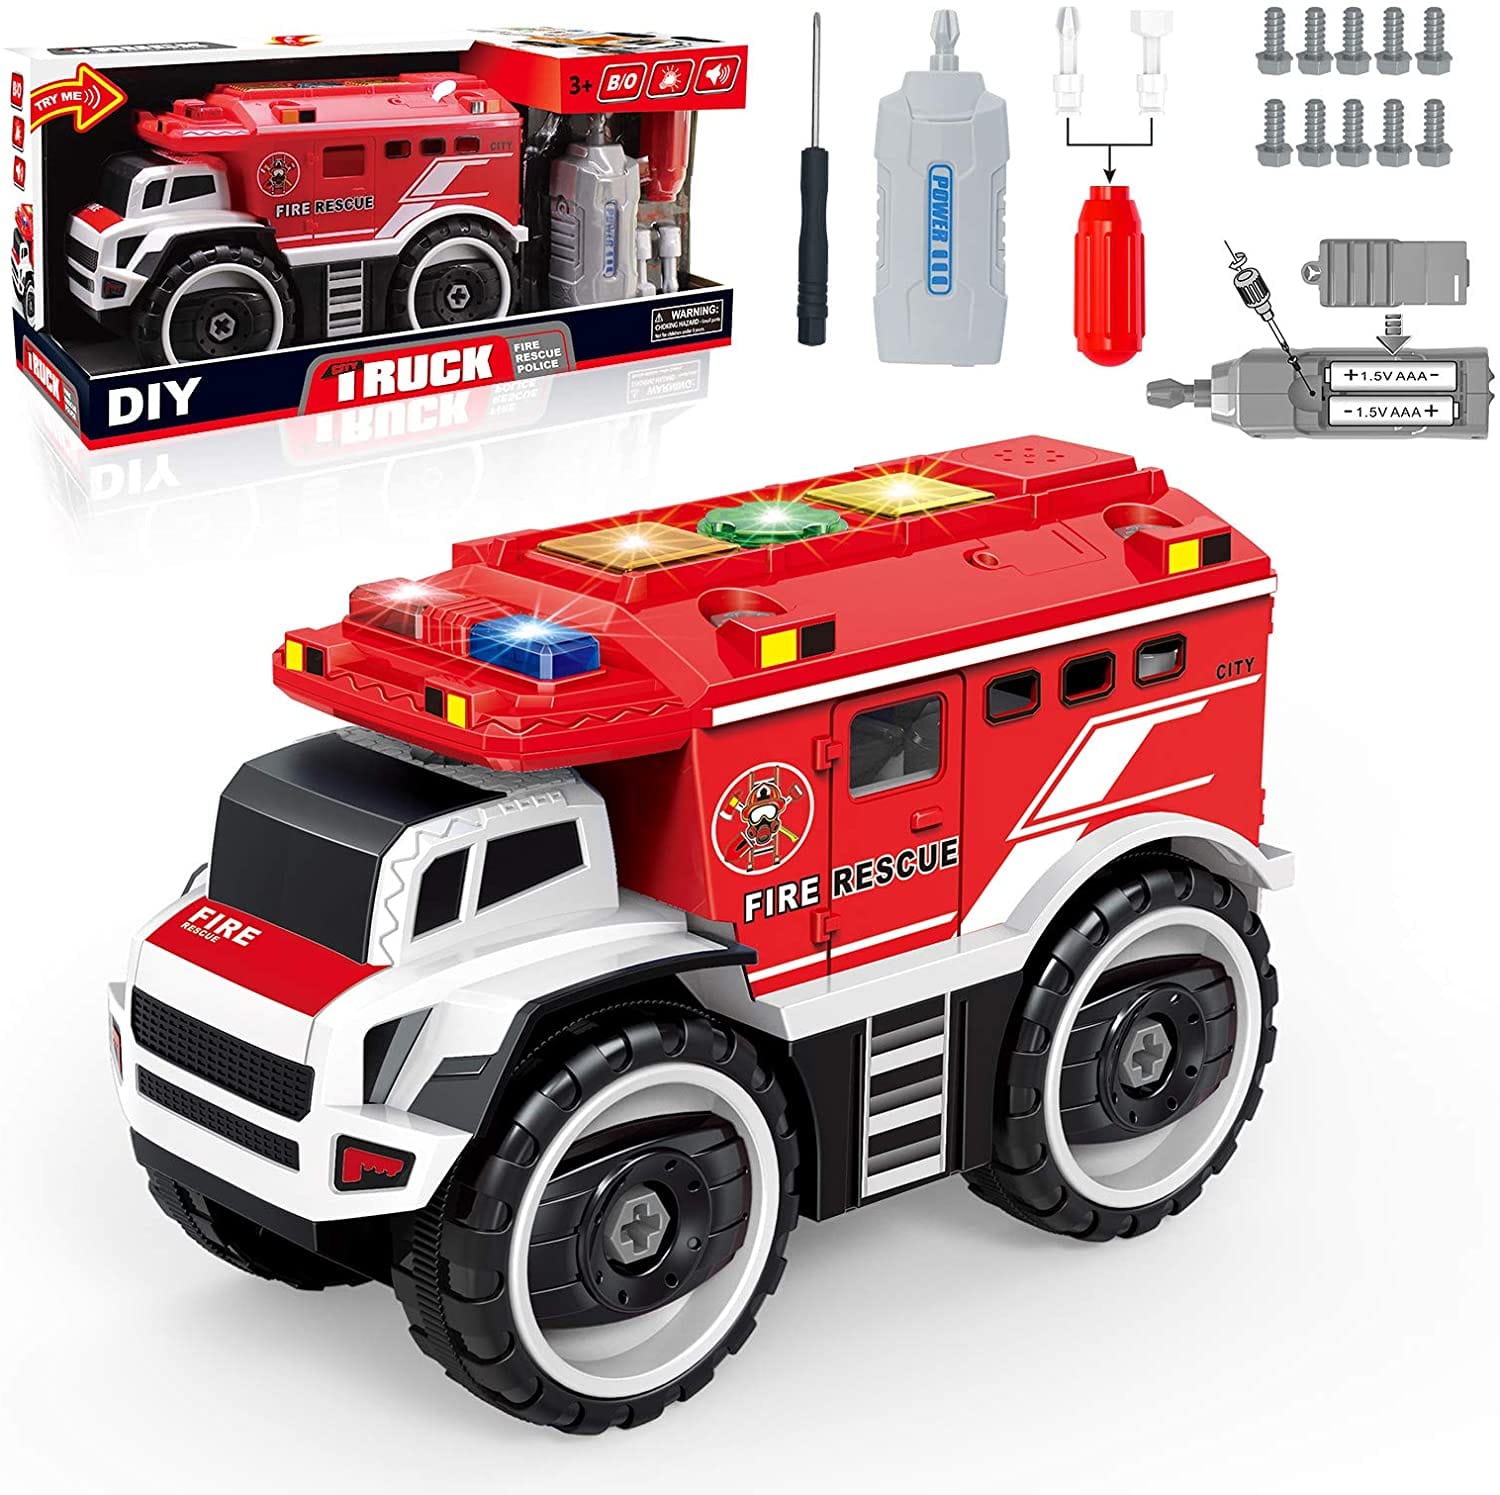 Camión de bomberos eléctrico desarmable con luces intermitentes, sonidos de sirena y destornillador eléctrico